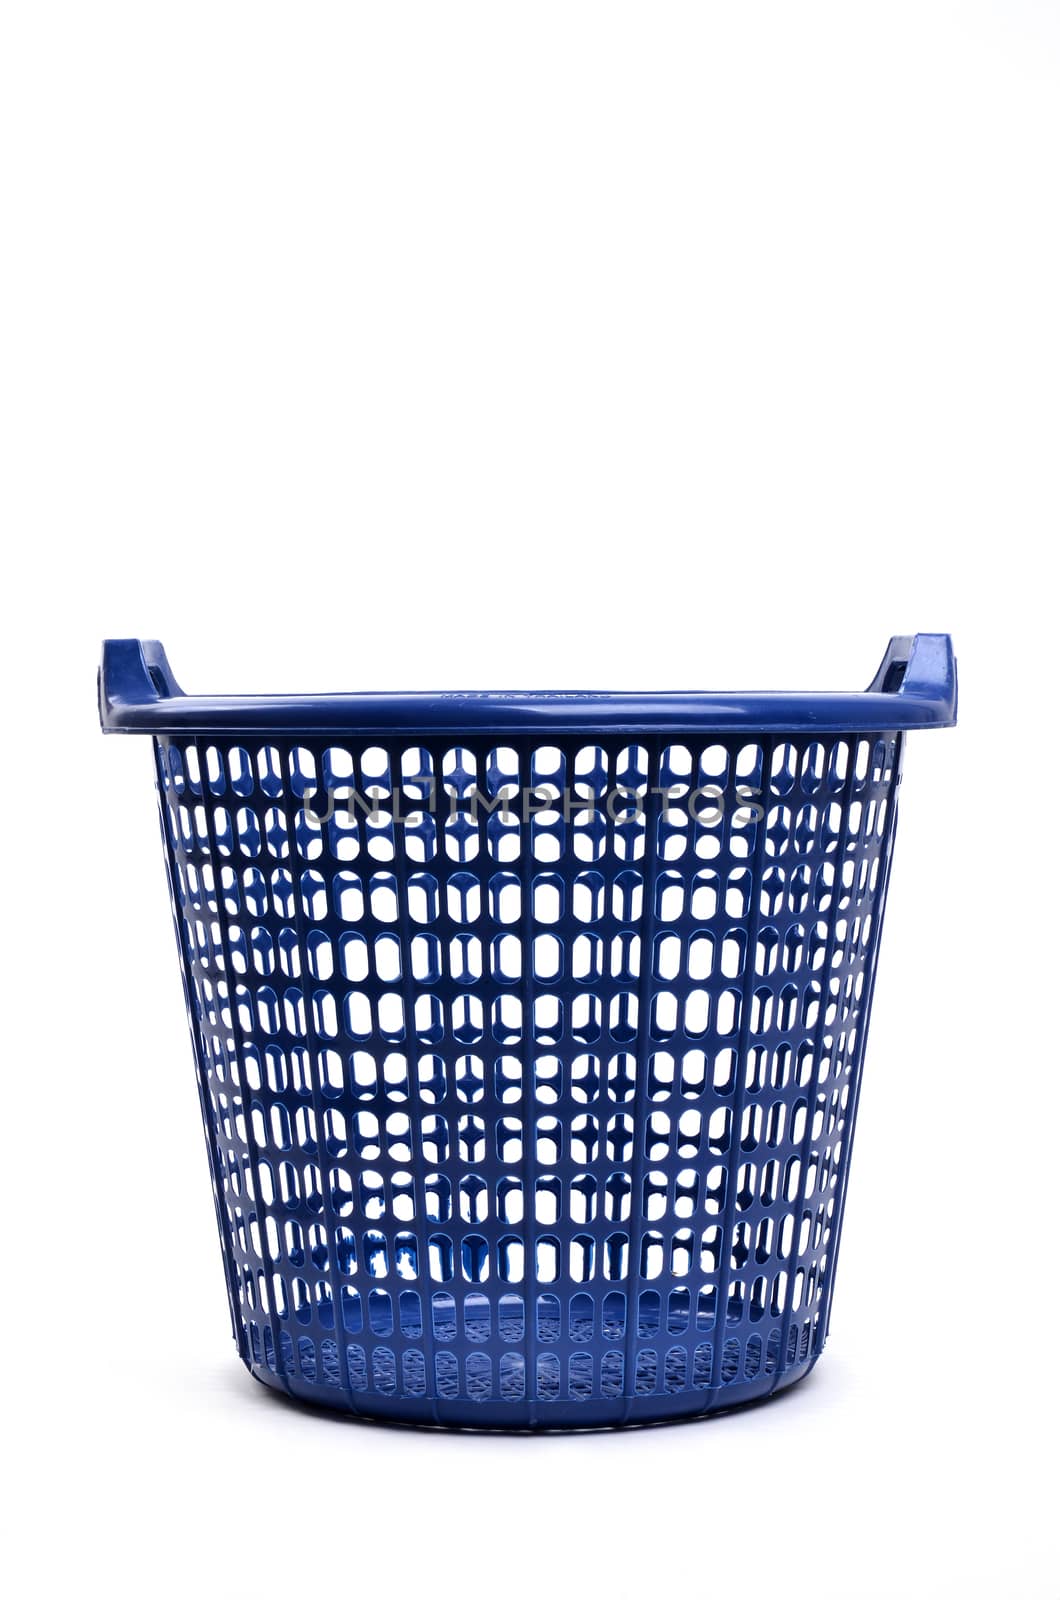 blue plastic basket isolated on white background